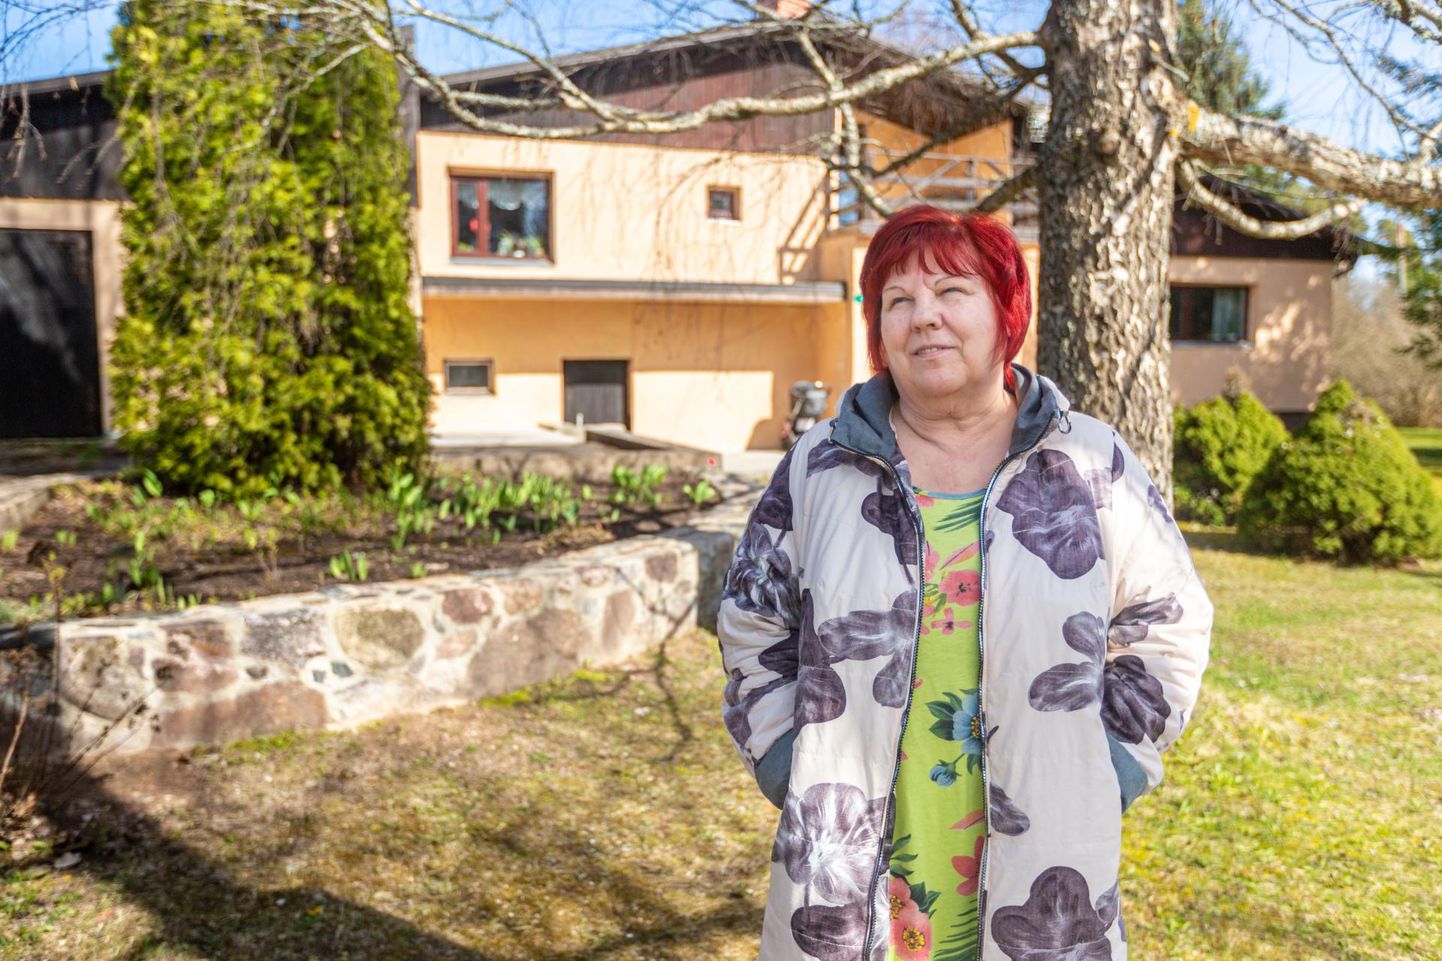 Põlvamaale Krootusele kodu rajanud Inge Ojala-Pihlaja sõnul on ainult endale elada väga tühi. «Tahtsime aidata last, kel ei ole kodu, peret ega vanemaid,» ütleb ta. Nüüd sirgub peres kuus last. 